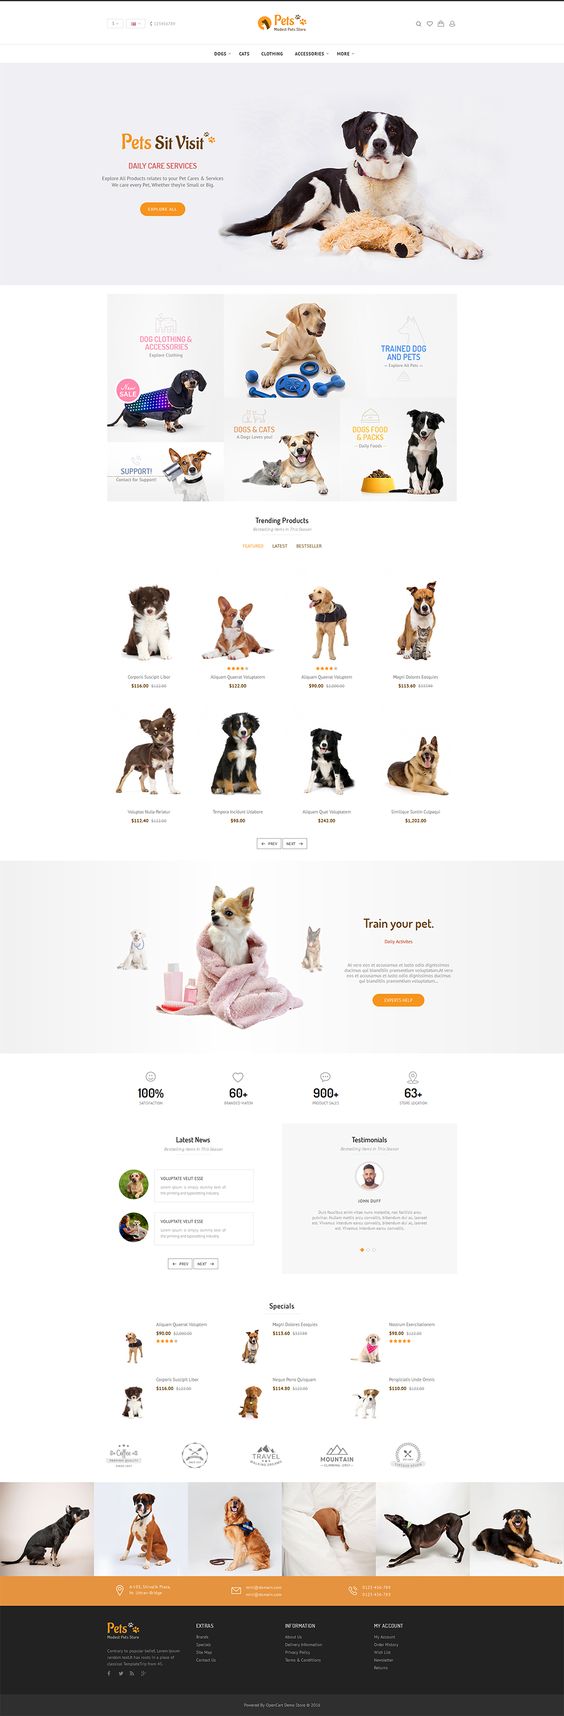 Giao diện web bán đồ dùng cho thú cưng